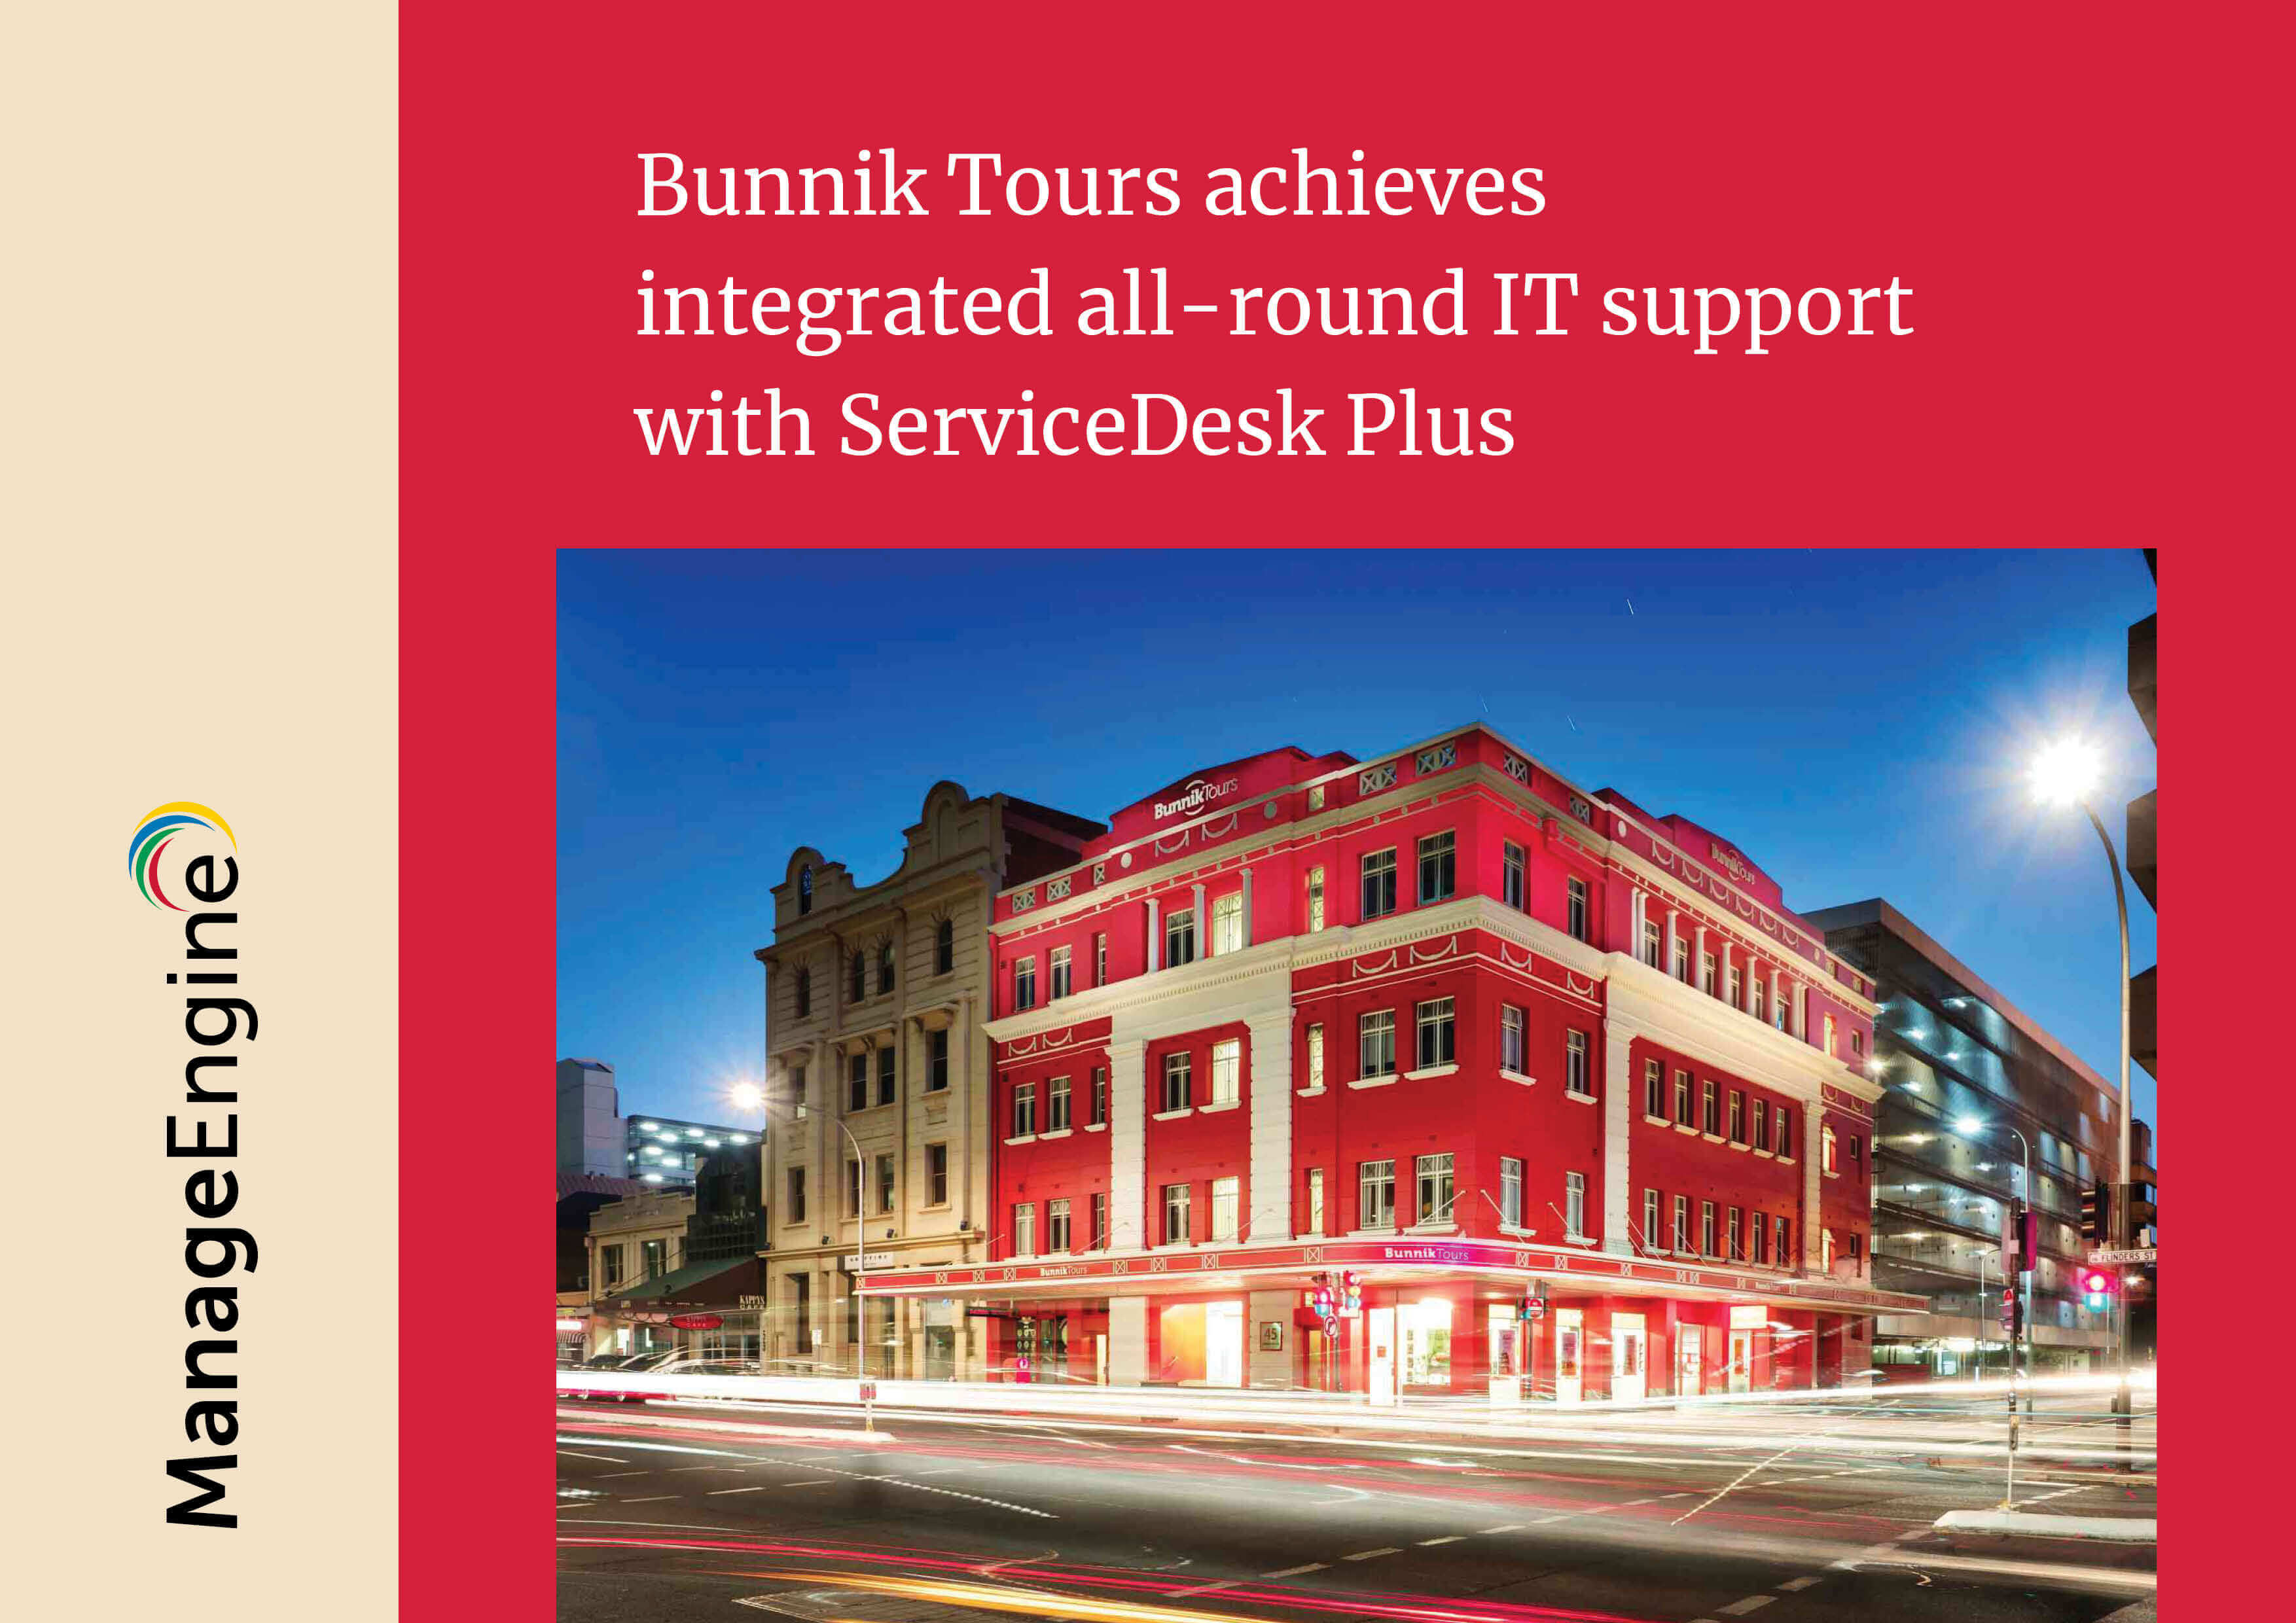 bunnik tours reviews complaints